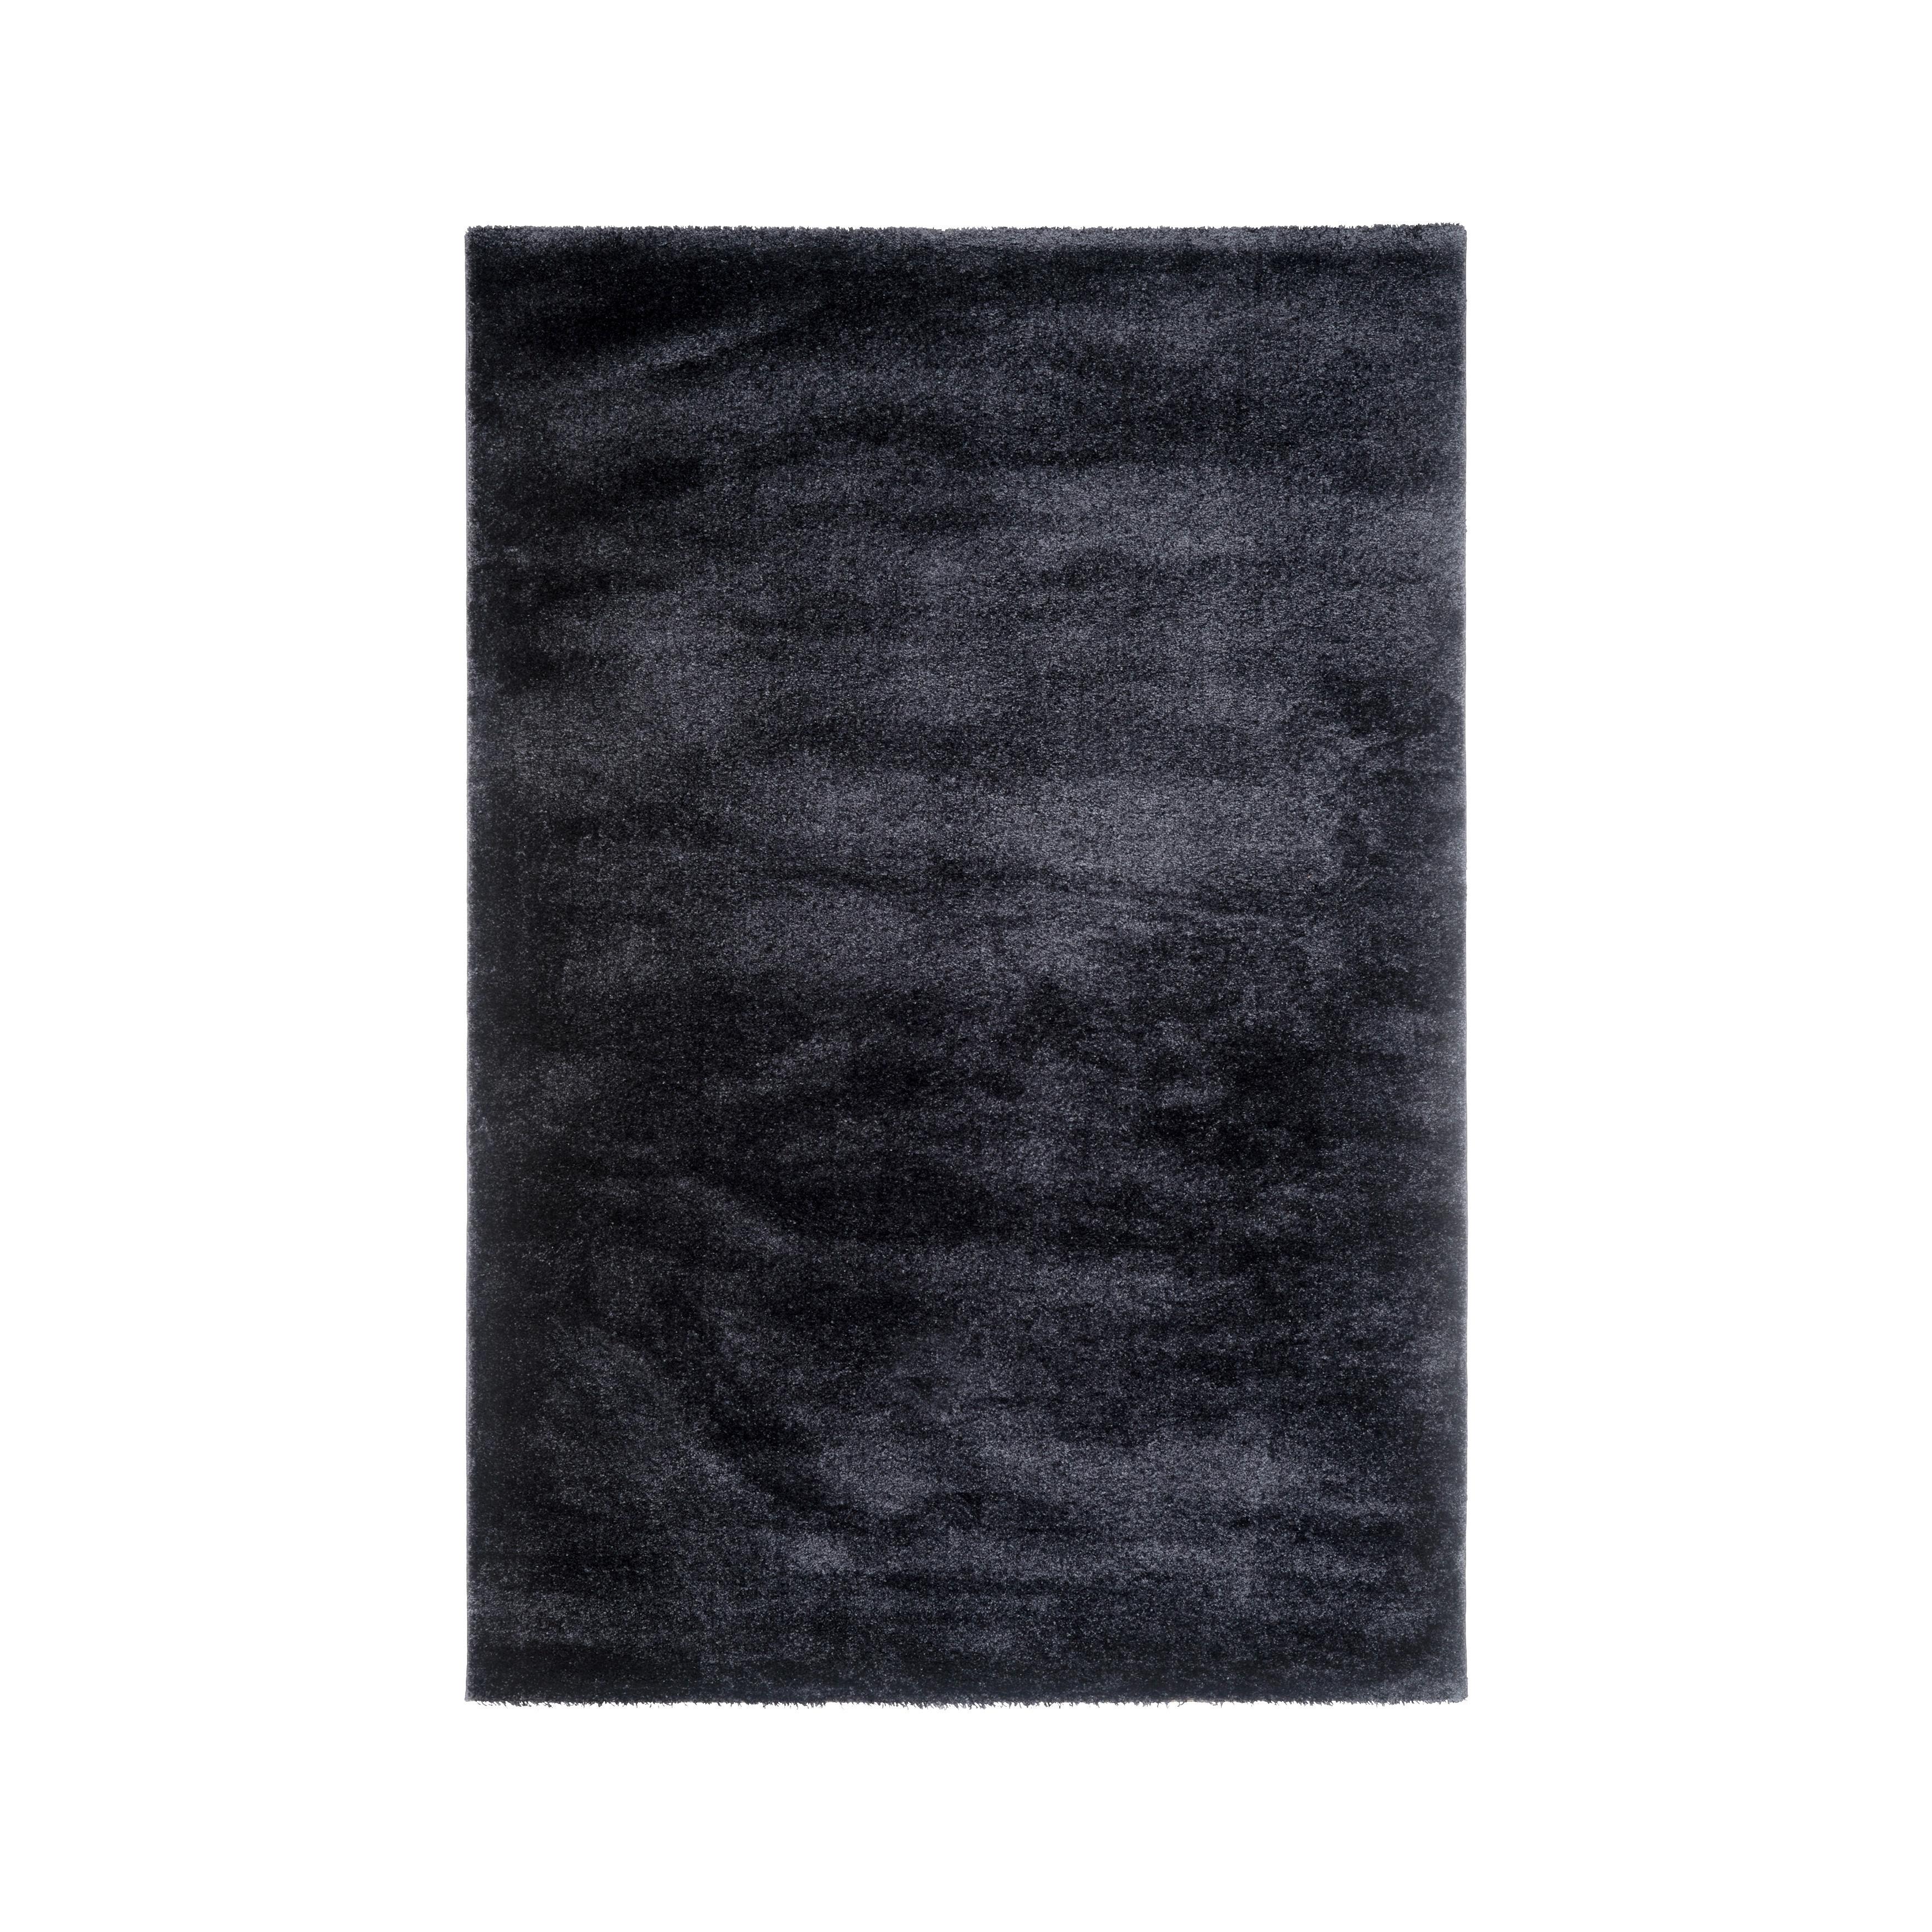 Szőtt Szőnyeg Rubin - Antracit, Natur, Textil (120/170cm) - Modern Living